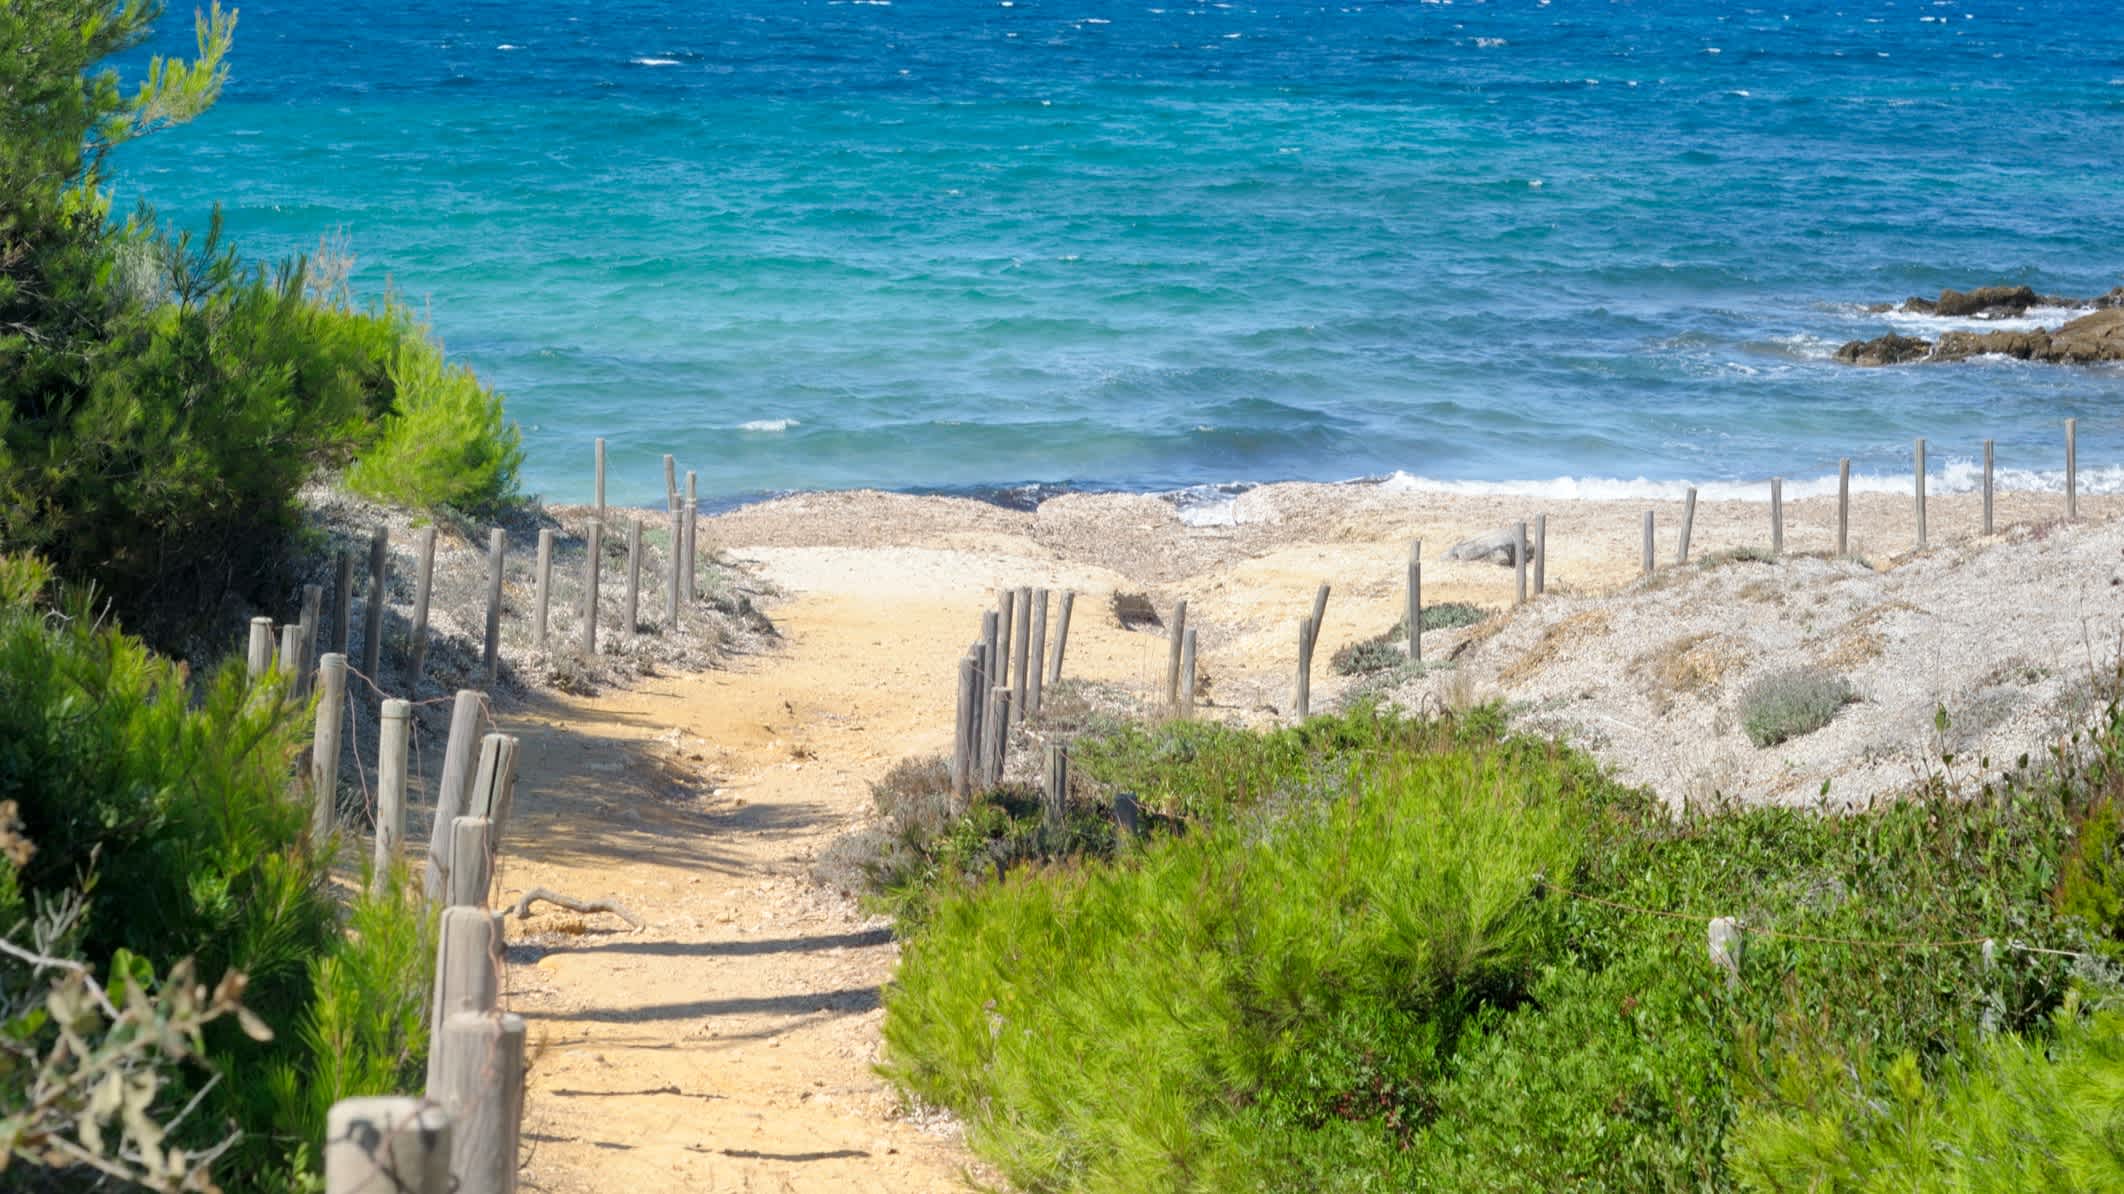 Der kleine Strand auf der Porquerolles Insel, Côte d'Azur, Frankreich mit Blick auf einen Weg der am Strand entlang führt und Aussicht auf das Meer und die natürliche Vegetation.

